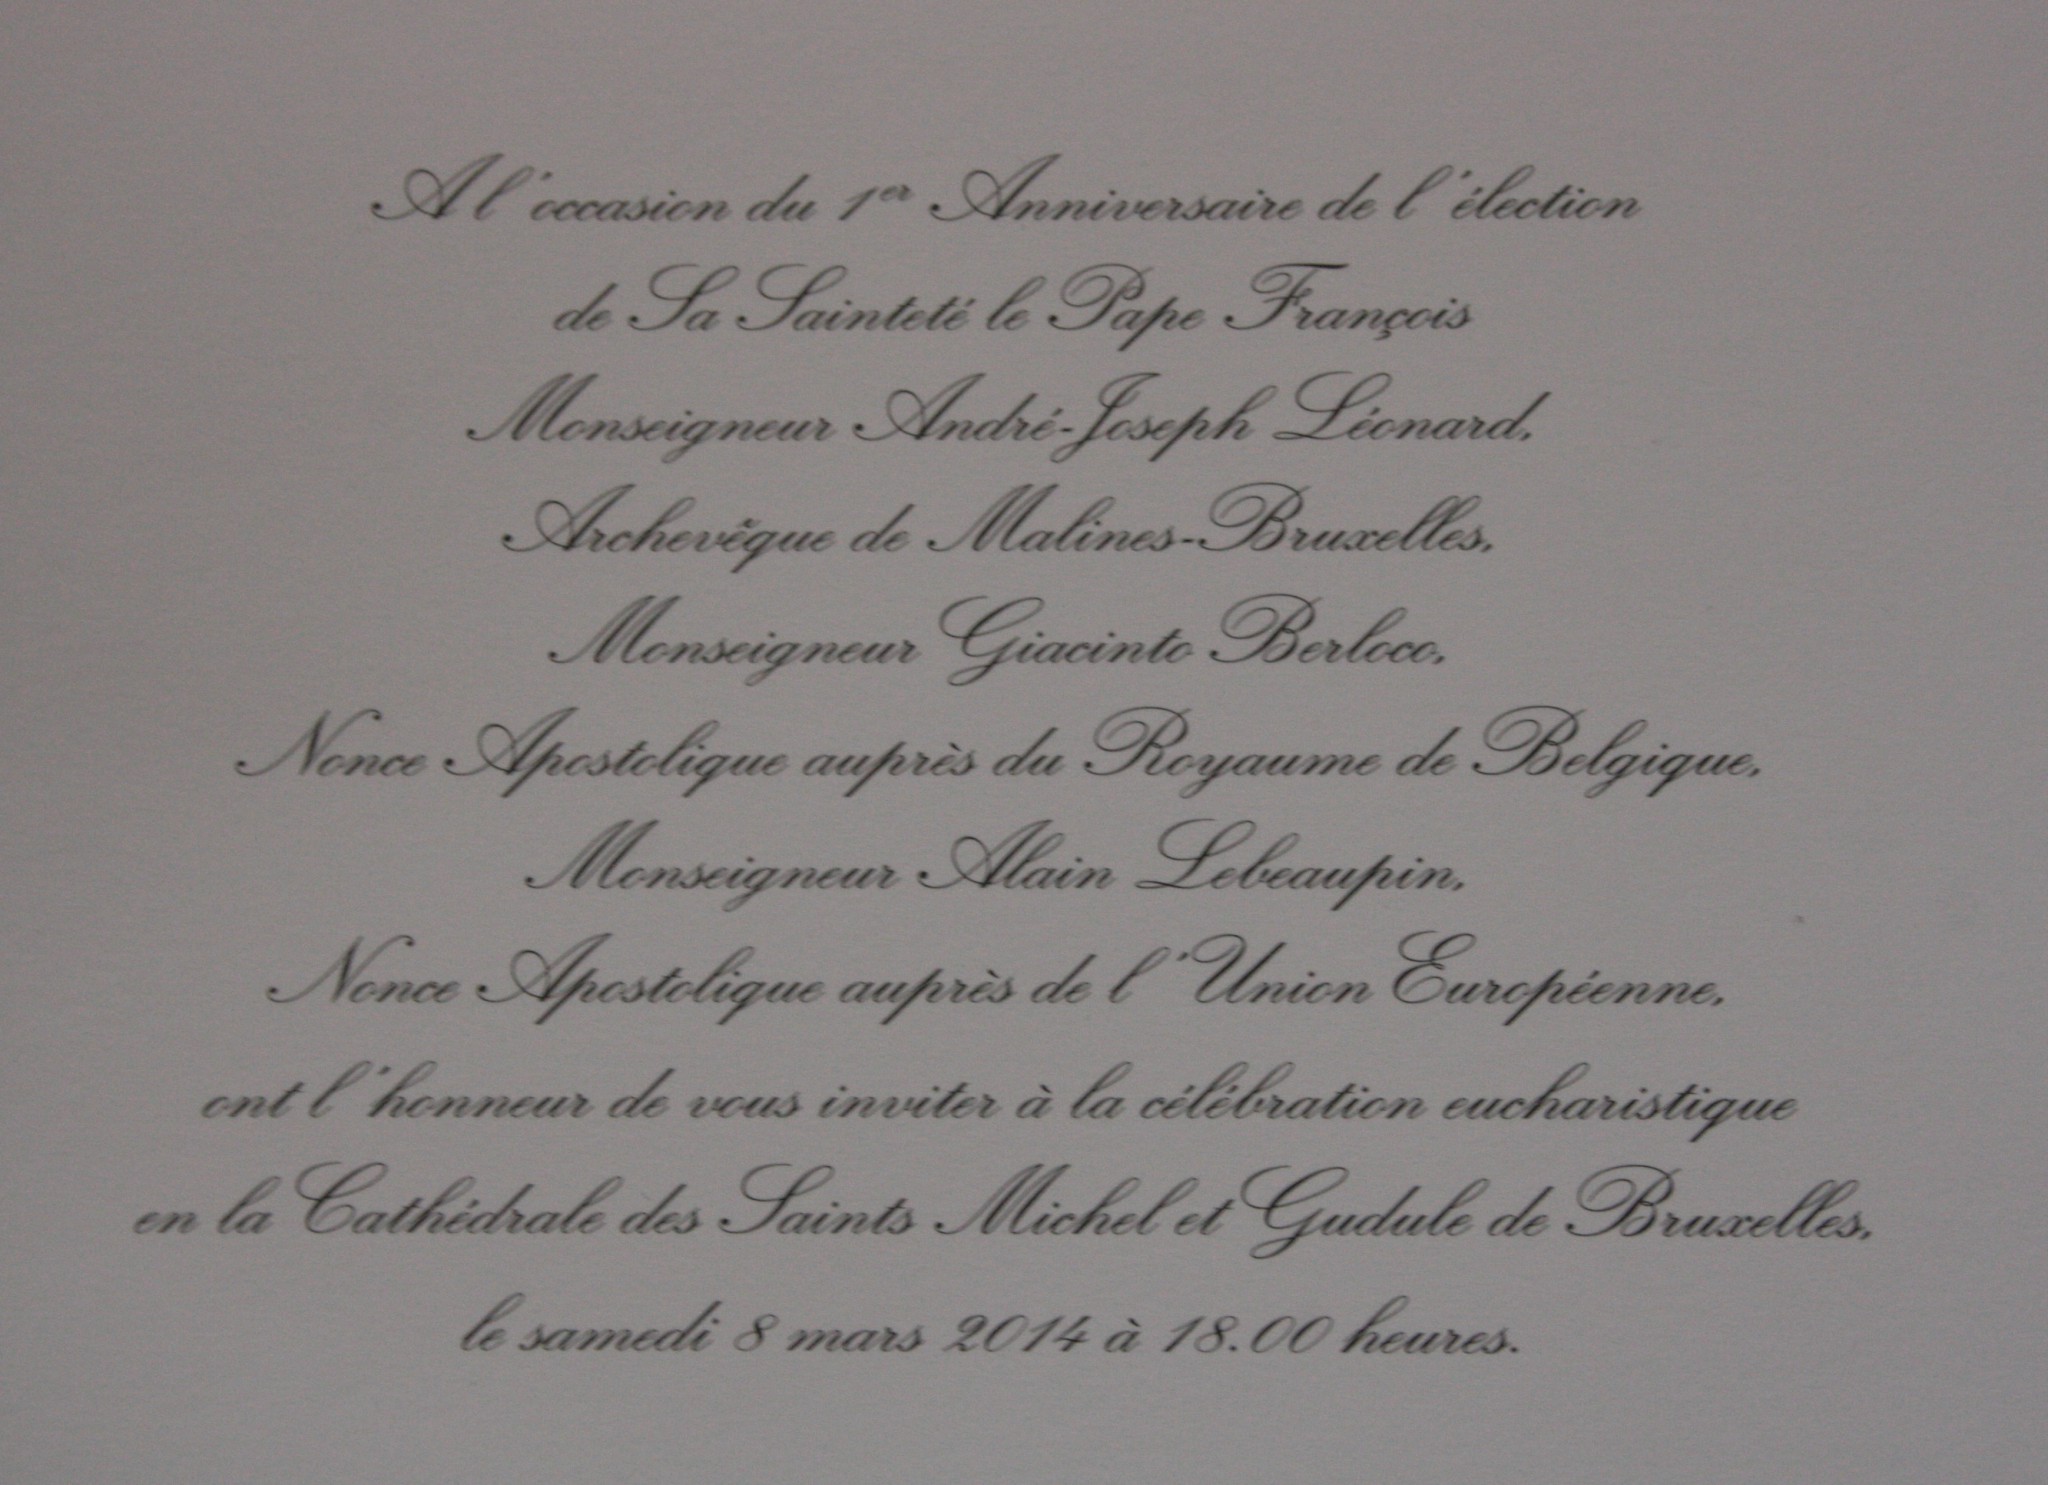 Messe, anniversaire, élection, Pape François, Mgr Léonard, Mgr Berloco, Mgr Lebeaupin, cathédrale, Bruxelles, 8 mars 2014, samedi 8 mars